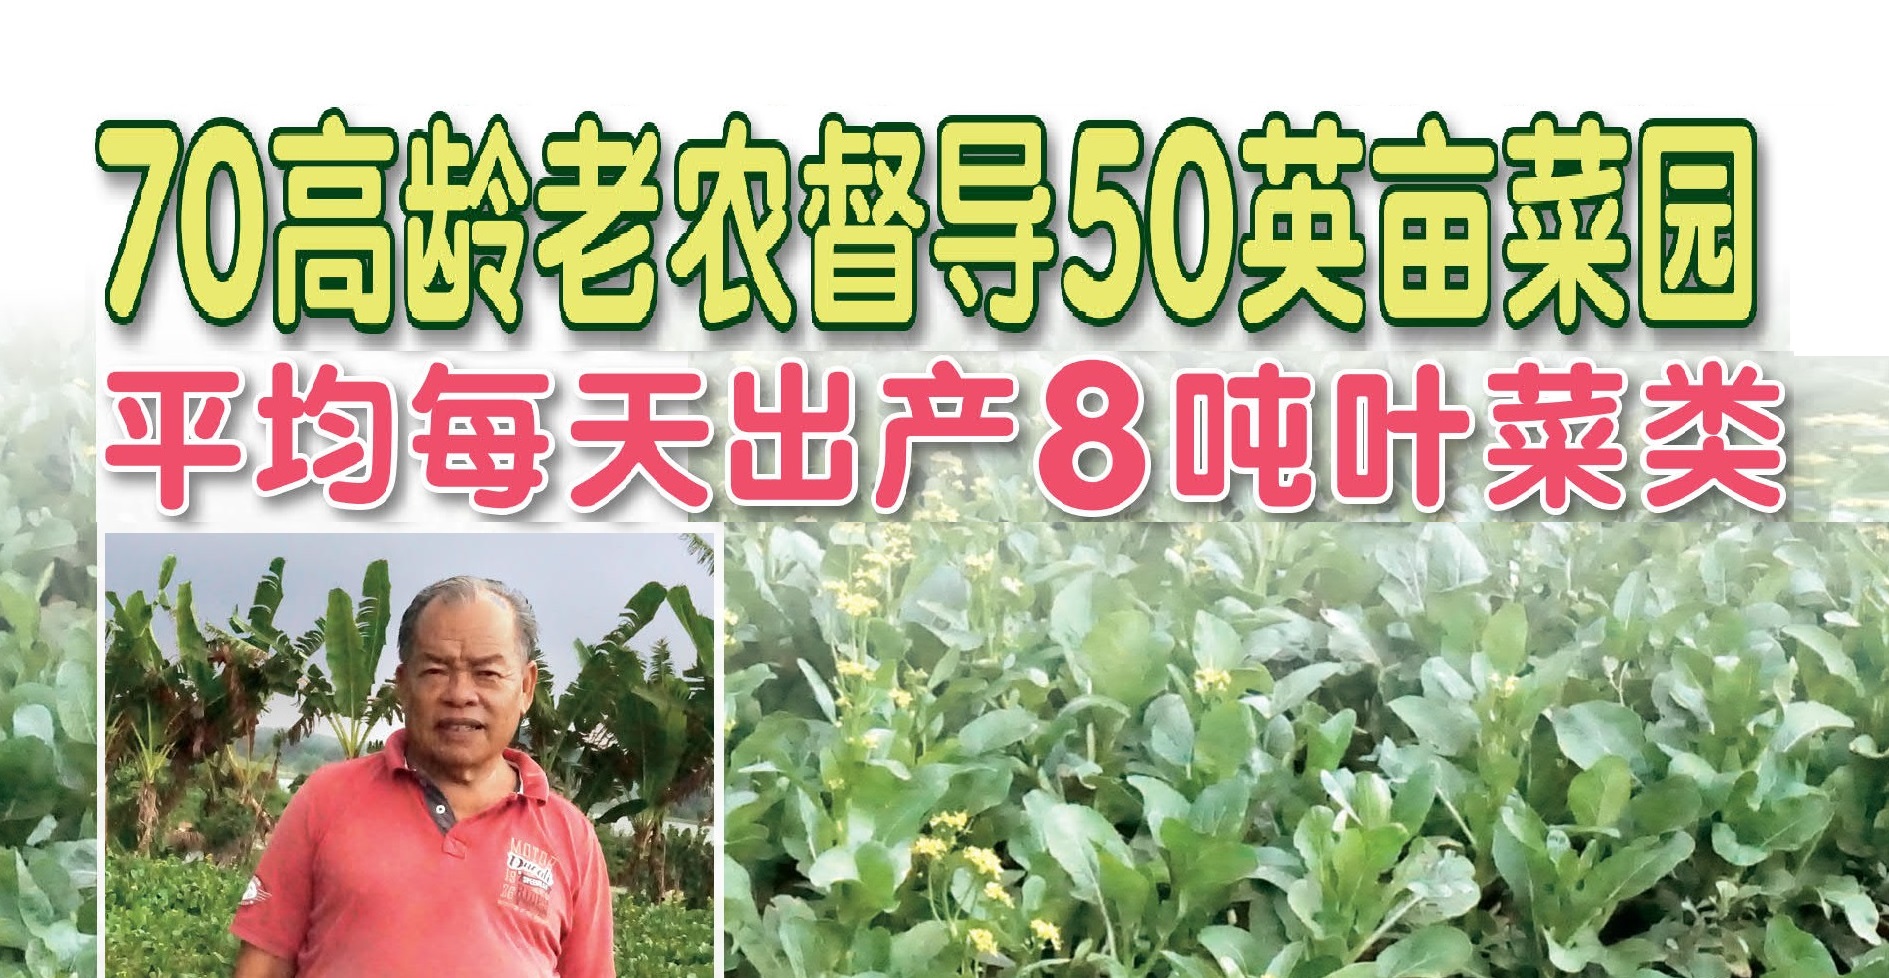 70高龄老农督导50英亩菜园 平均每天出产8吨叶菜类 - 农牧世界